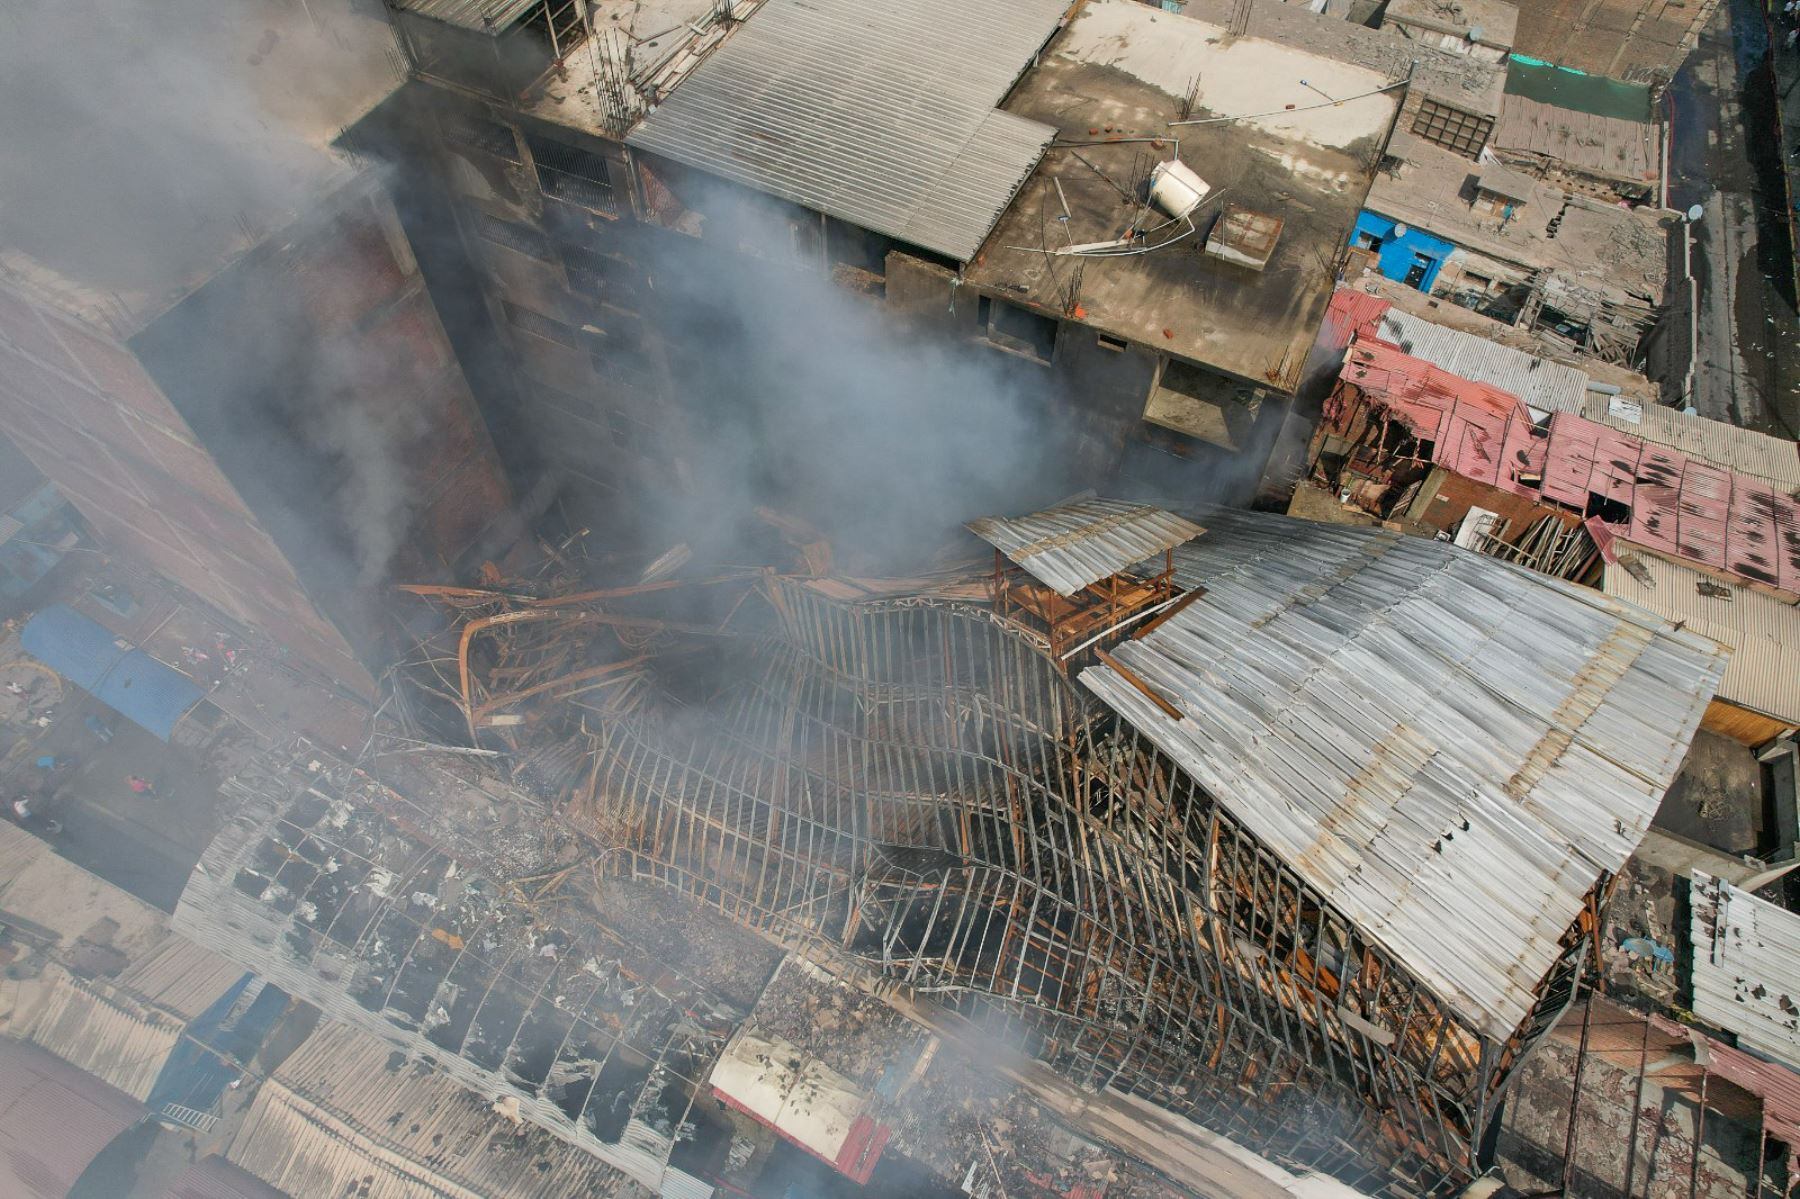 El incendio del almacén en Barrios Altos duró más de 40 horas activo antes de que los Bomberos puedan apagarlo por completo. (Foto: ANDINA)